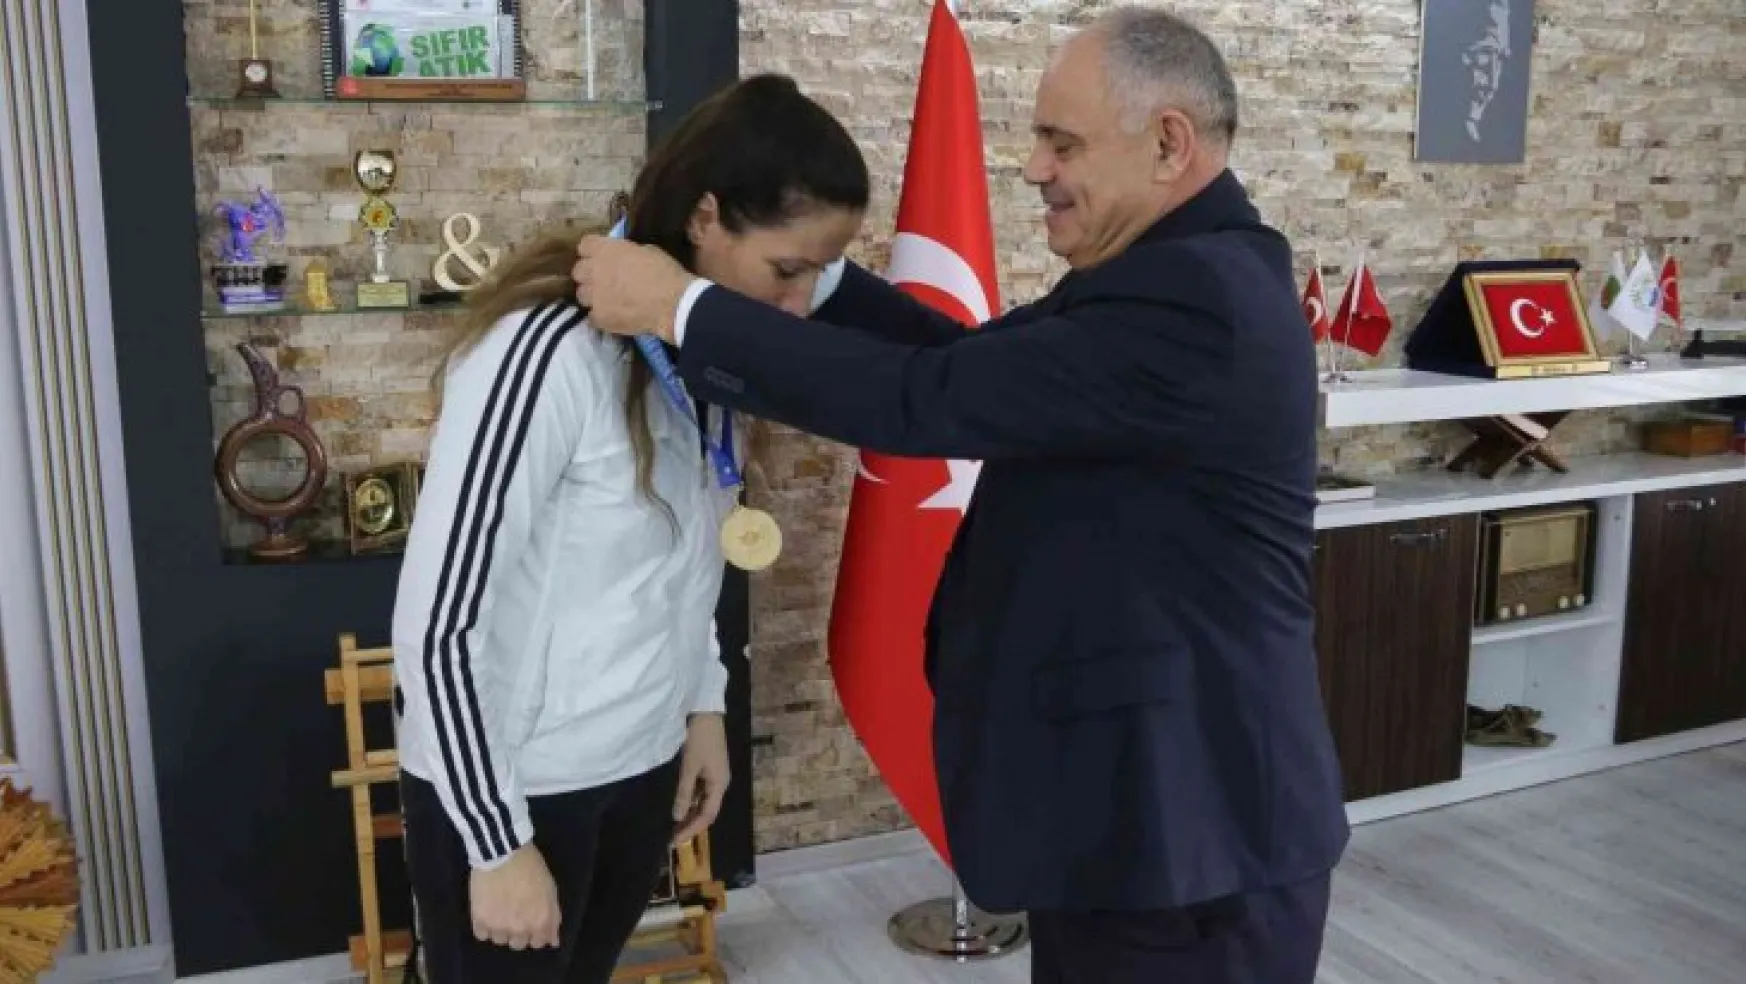 Kick Boks Türkiye Şampiyonu'ndan Başkan Öztürk'e ziyaret